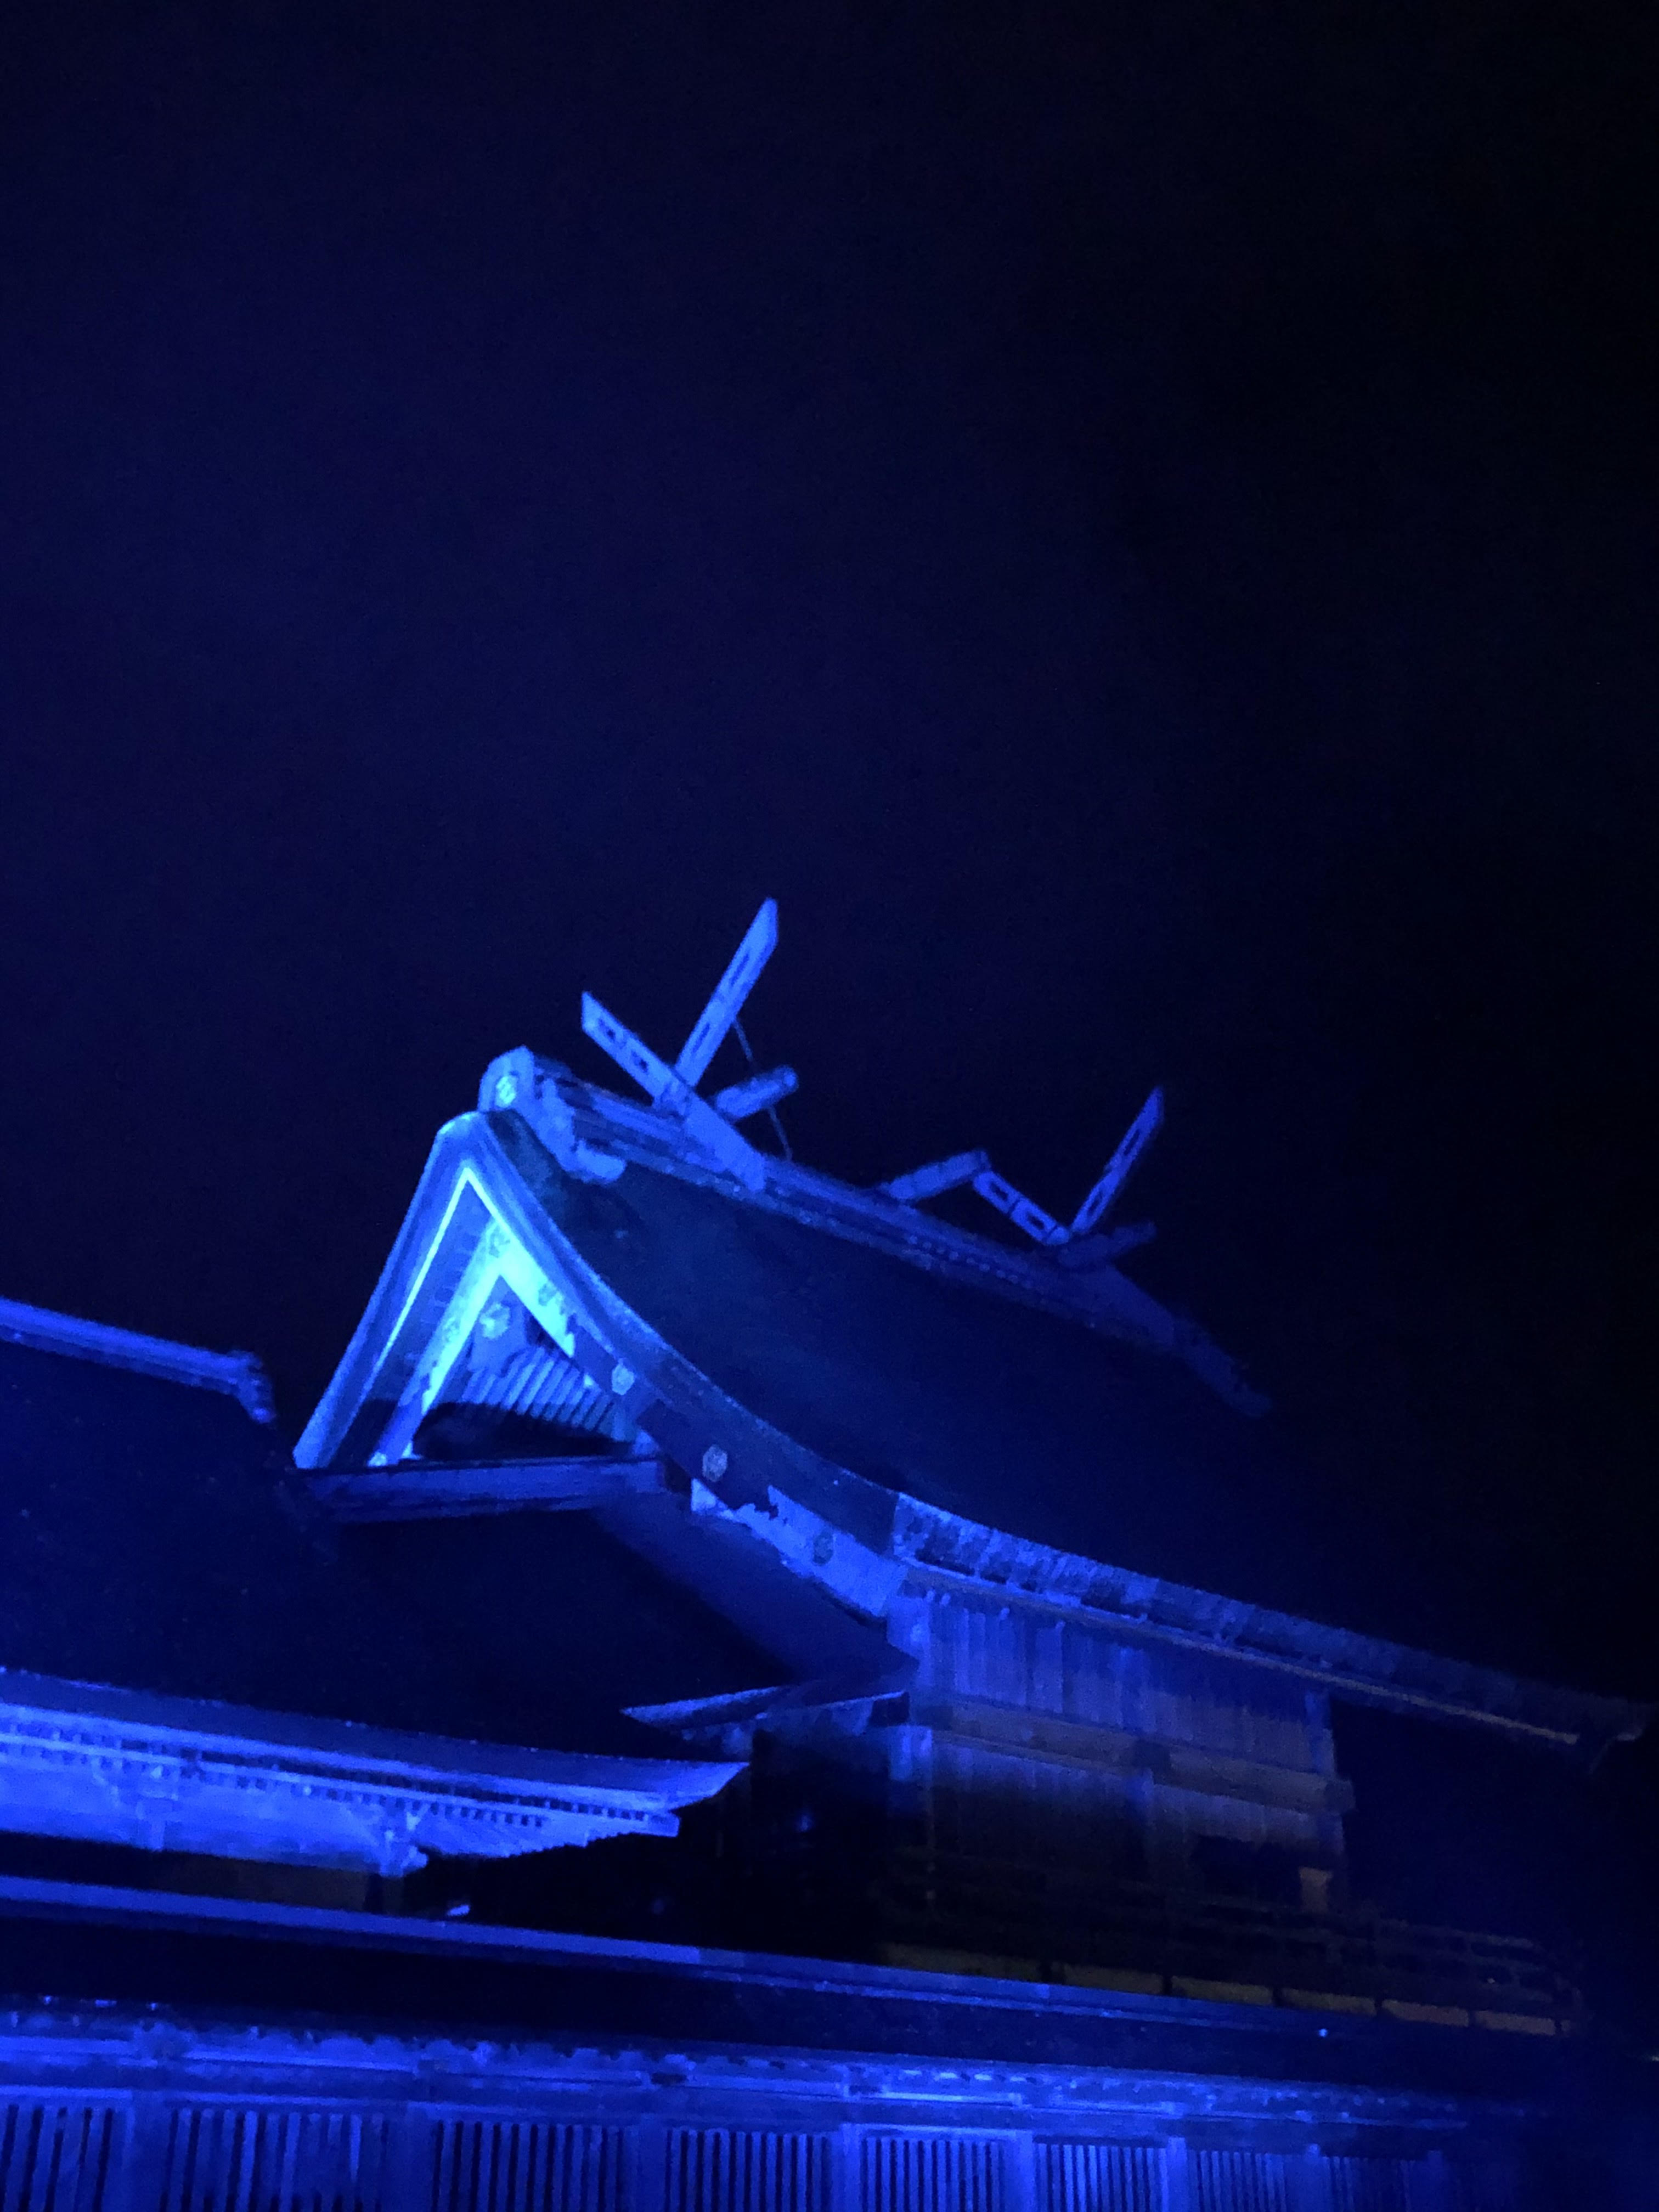 「しまね秋の海ごみゼロウィーク」出雲大社の御本殿・八足門ブルーライトアップのアイキャッチ画像